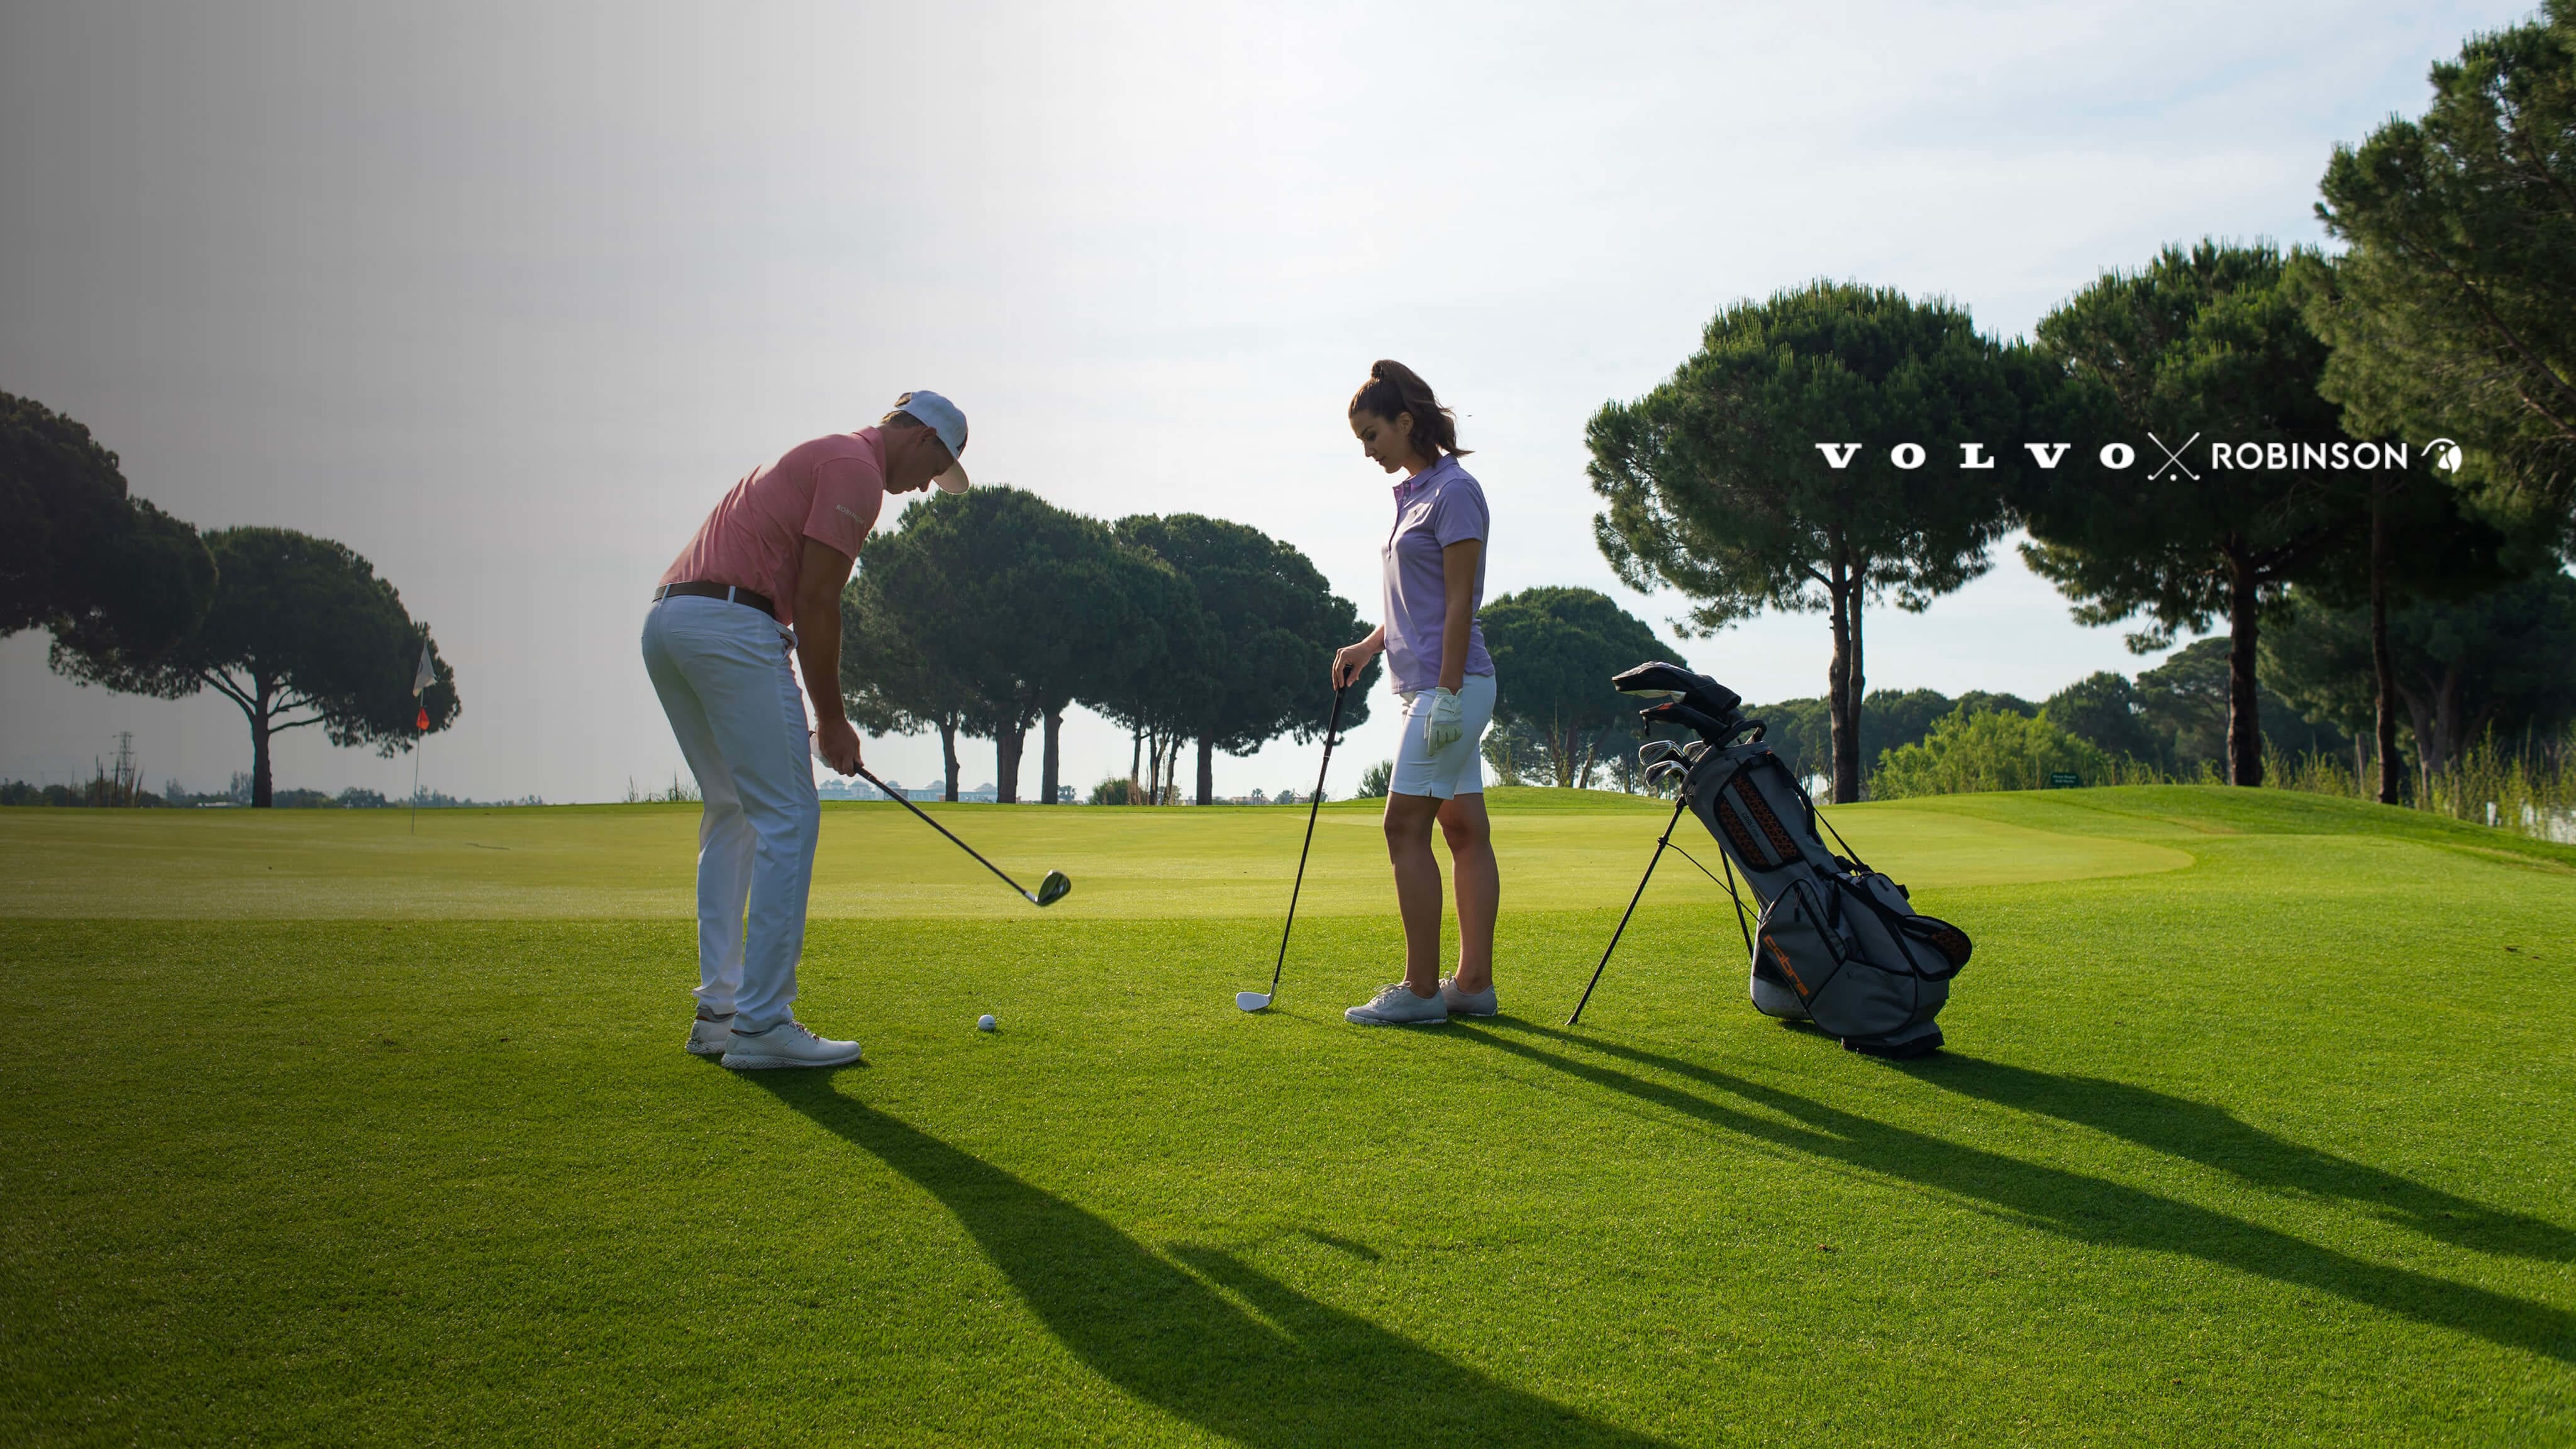 Volvo x Robinson - Zwei Golfer:innen stehen auf einer Golfwiese